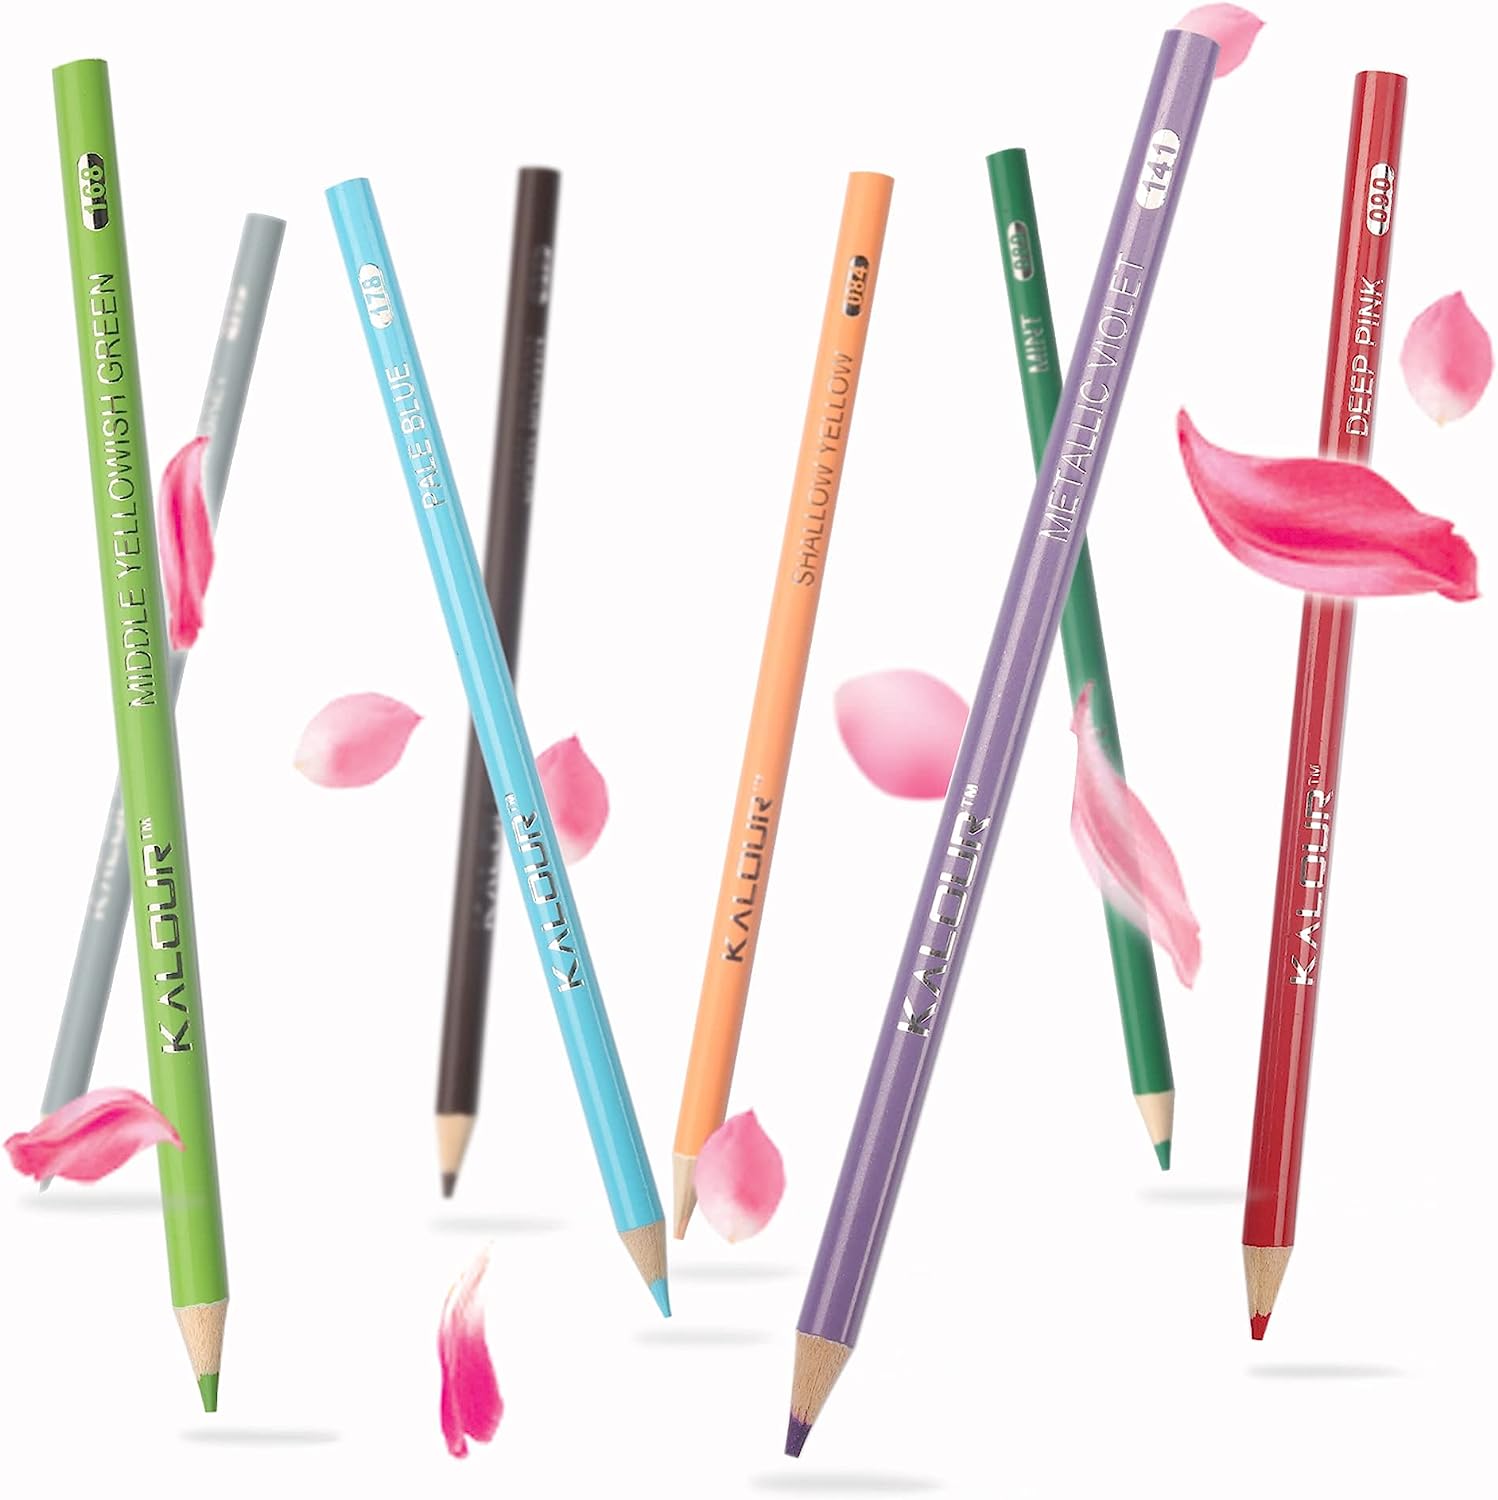 Kalour 132 Colored Pencils Zipper-Case Set Soft Core Colored Leads